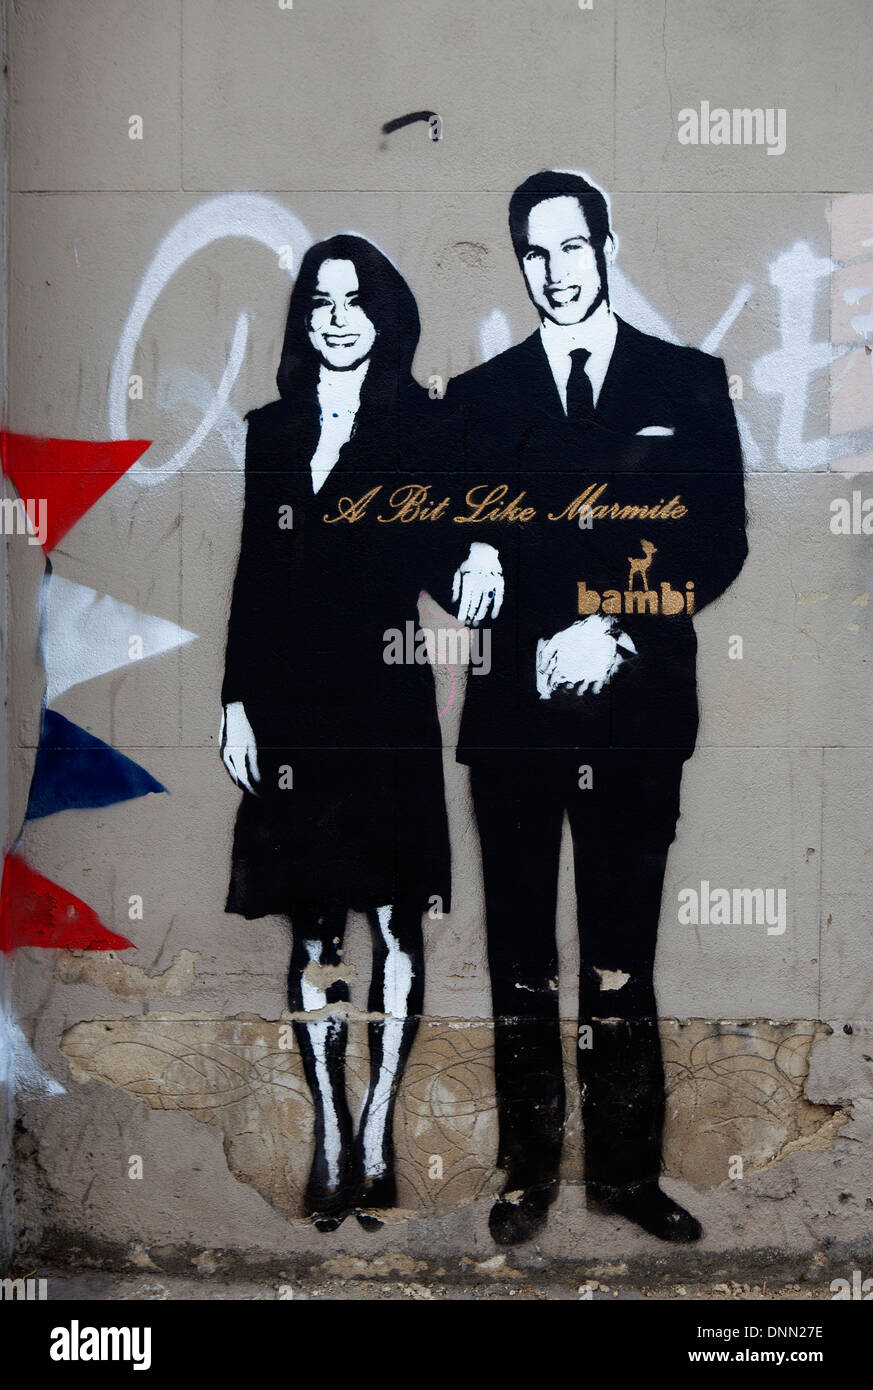 Il principe William e Kate Middleton, un po' come la marmite, Bambi graffiti, London, Regno Unito Foto Stock